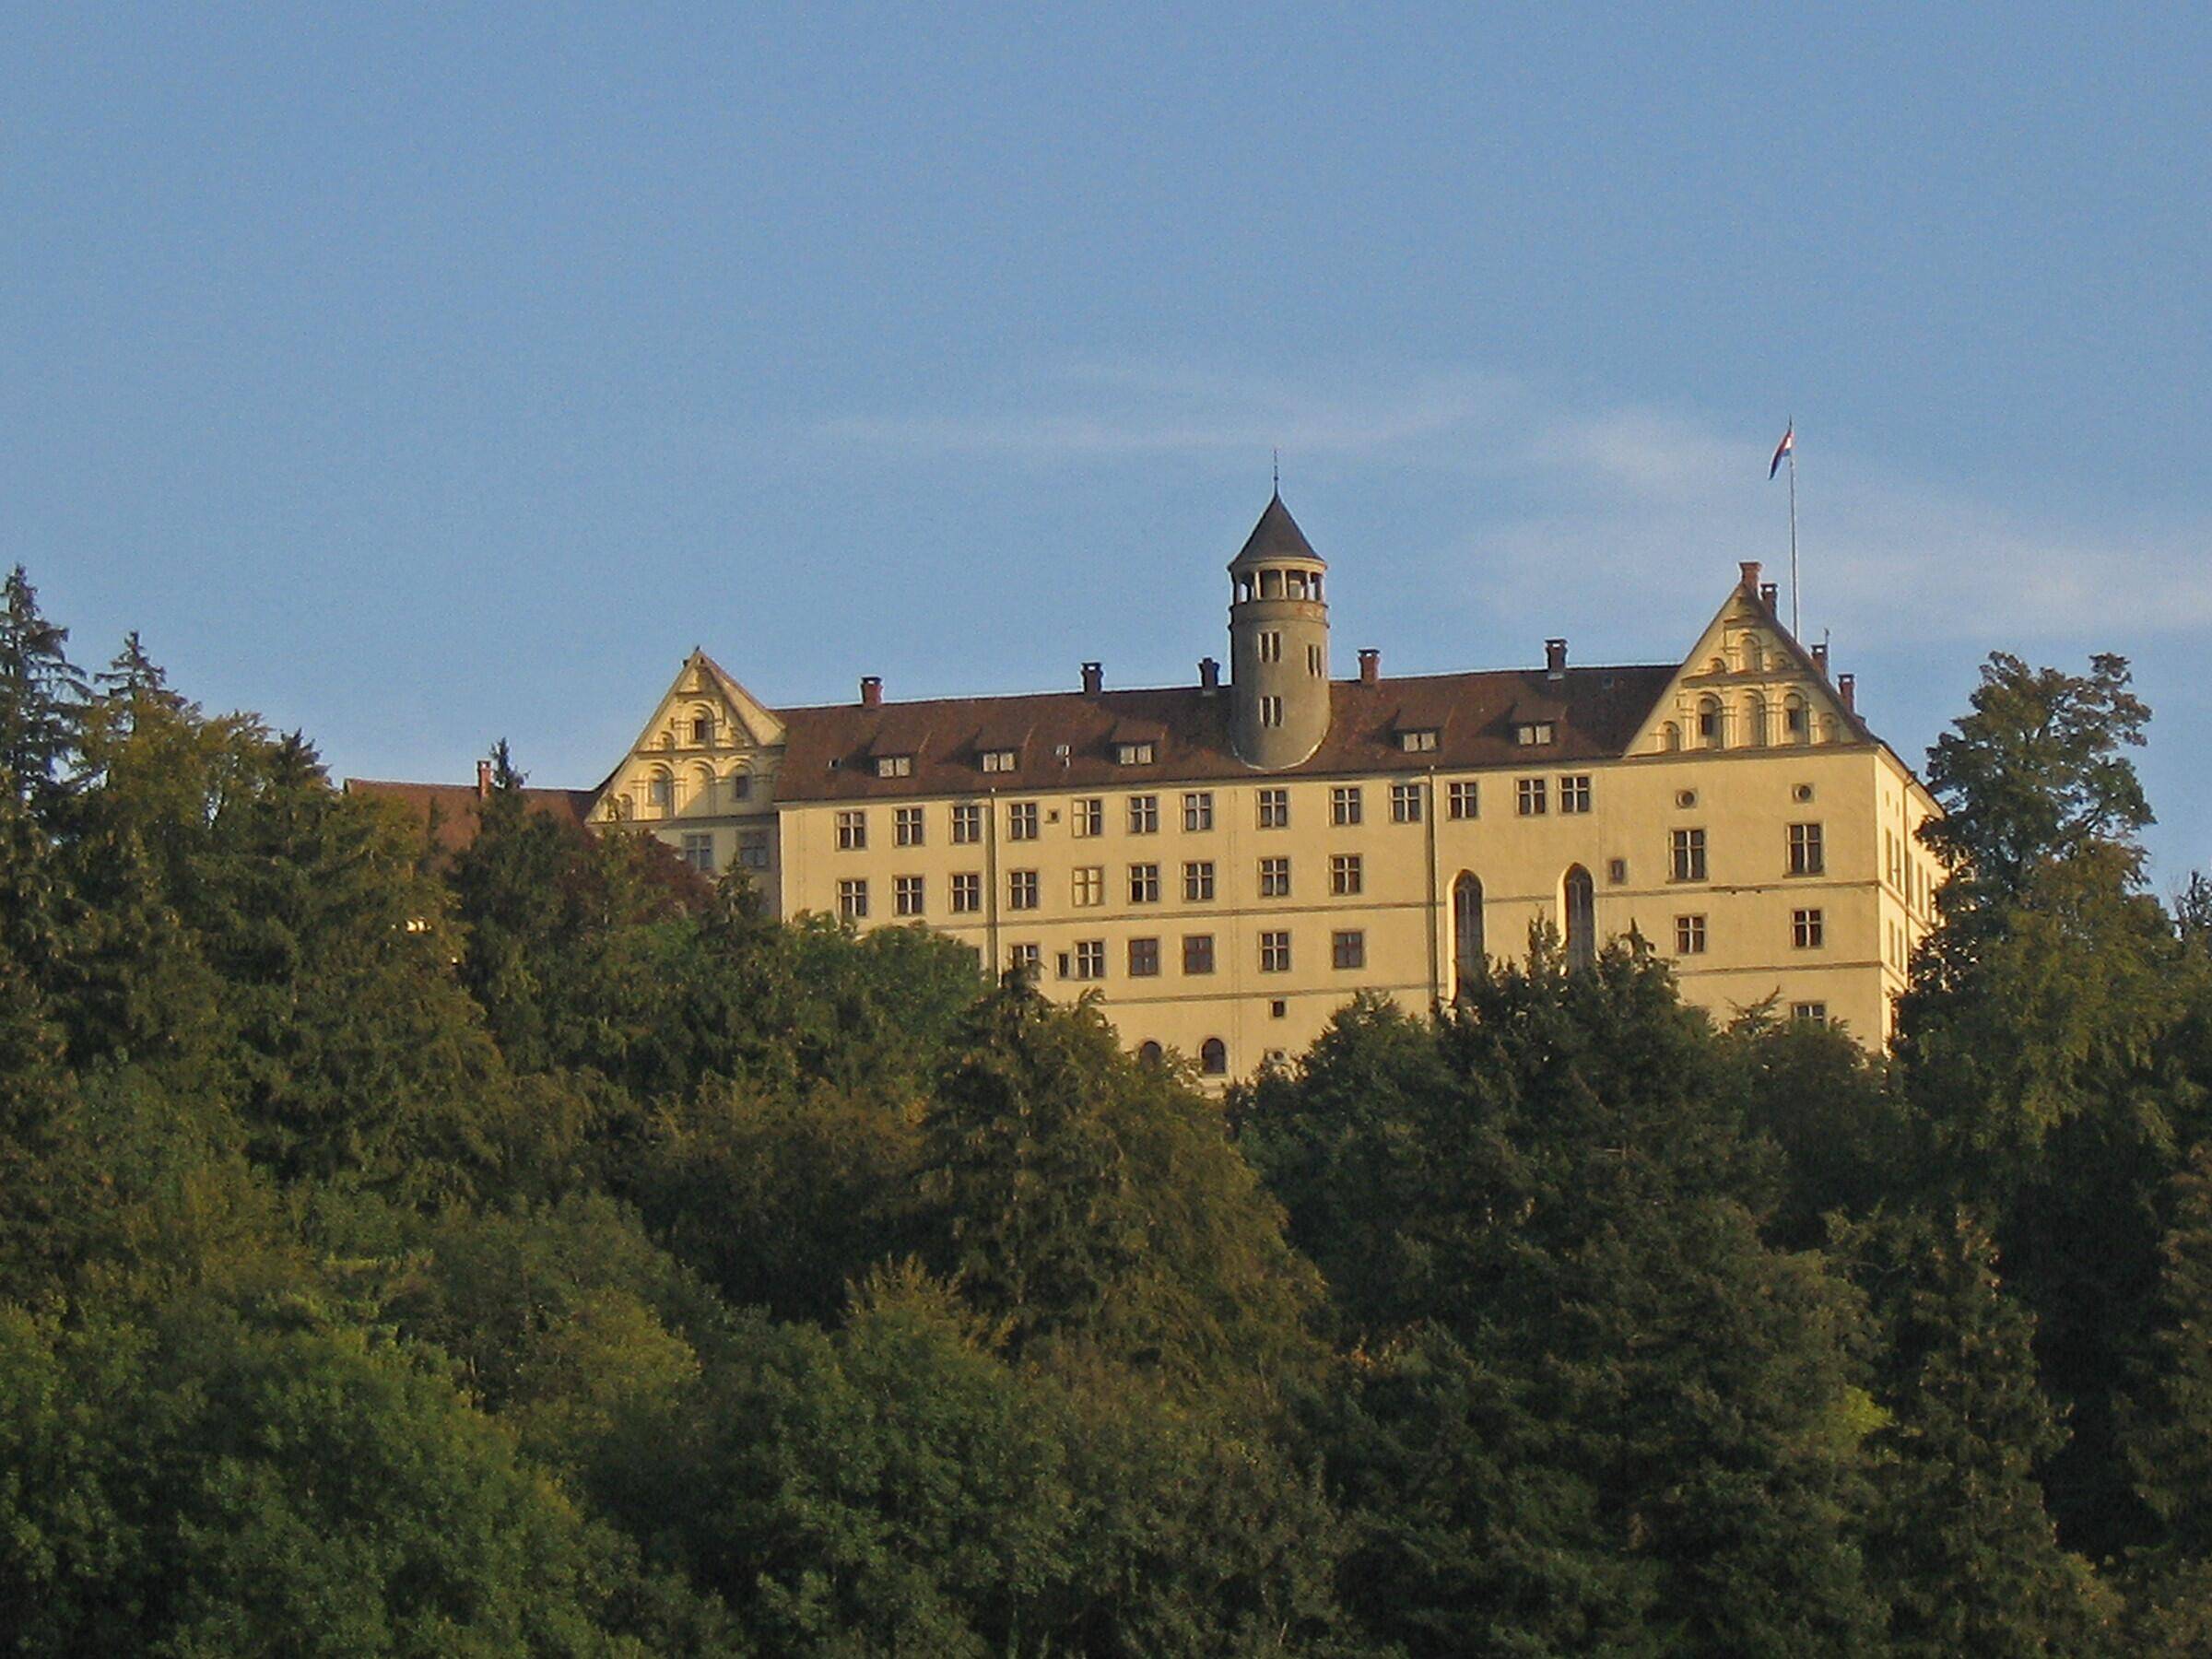 Umgebung - Schloss Heiligenberg